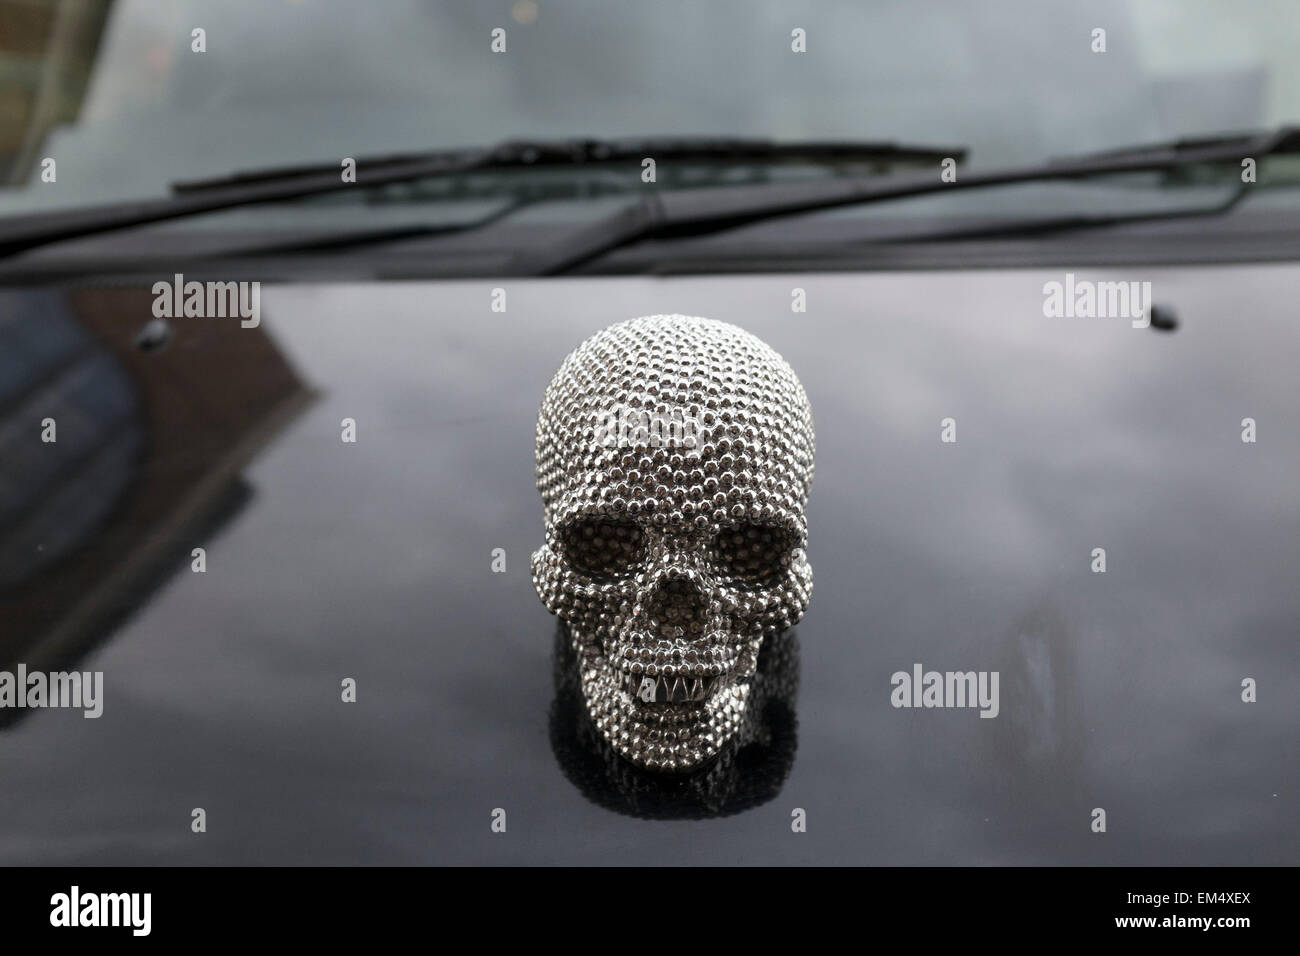 Insignia Capot cráneo metálico sobre el capó de un taxi. Esta pequeña  cabeza humana es del estilo de la calavera de diamantes de Damien Hirst, un  mundo renombradas obras de arte. Londres,